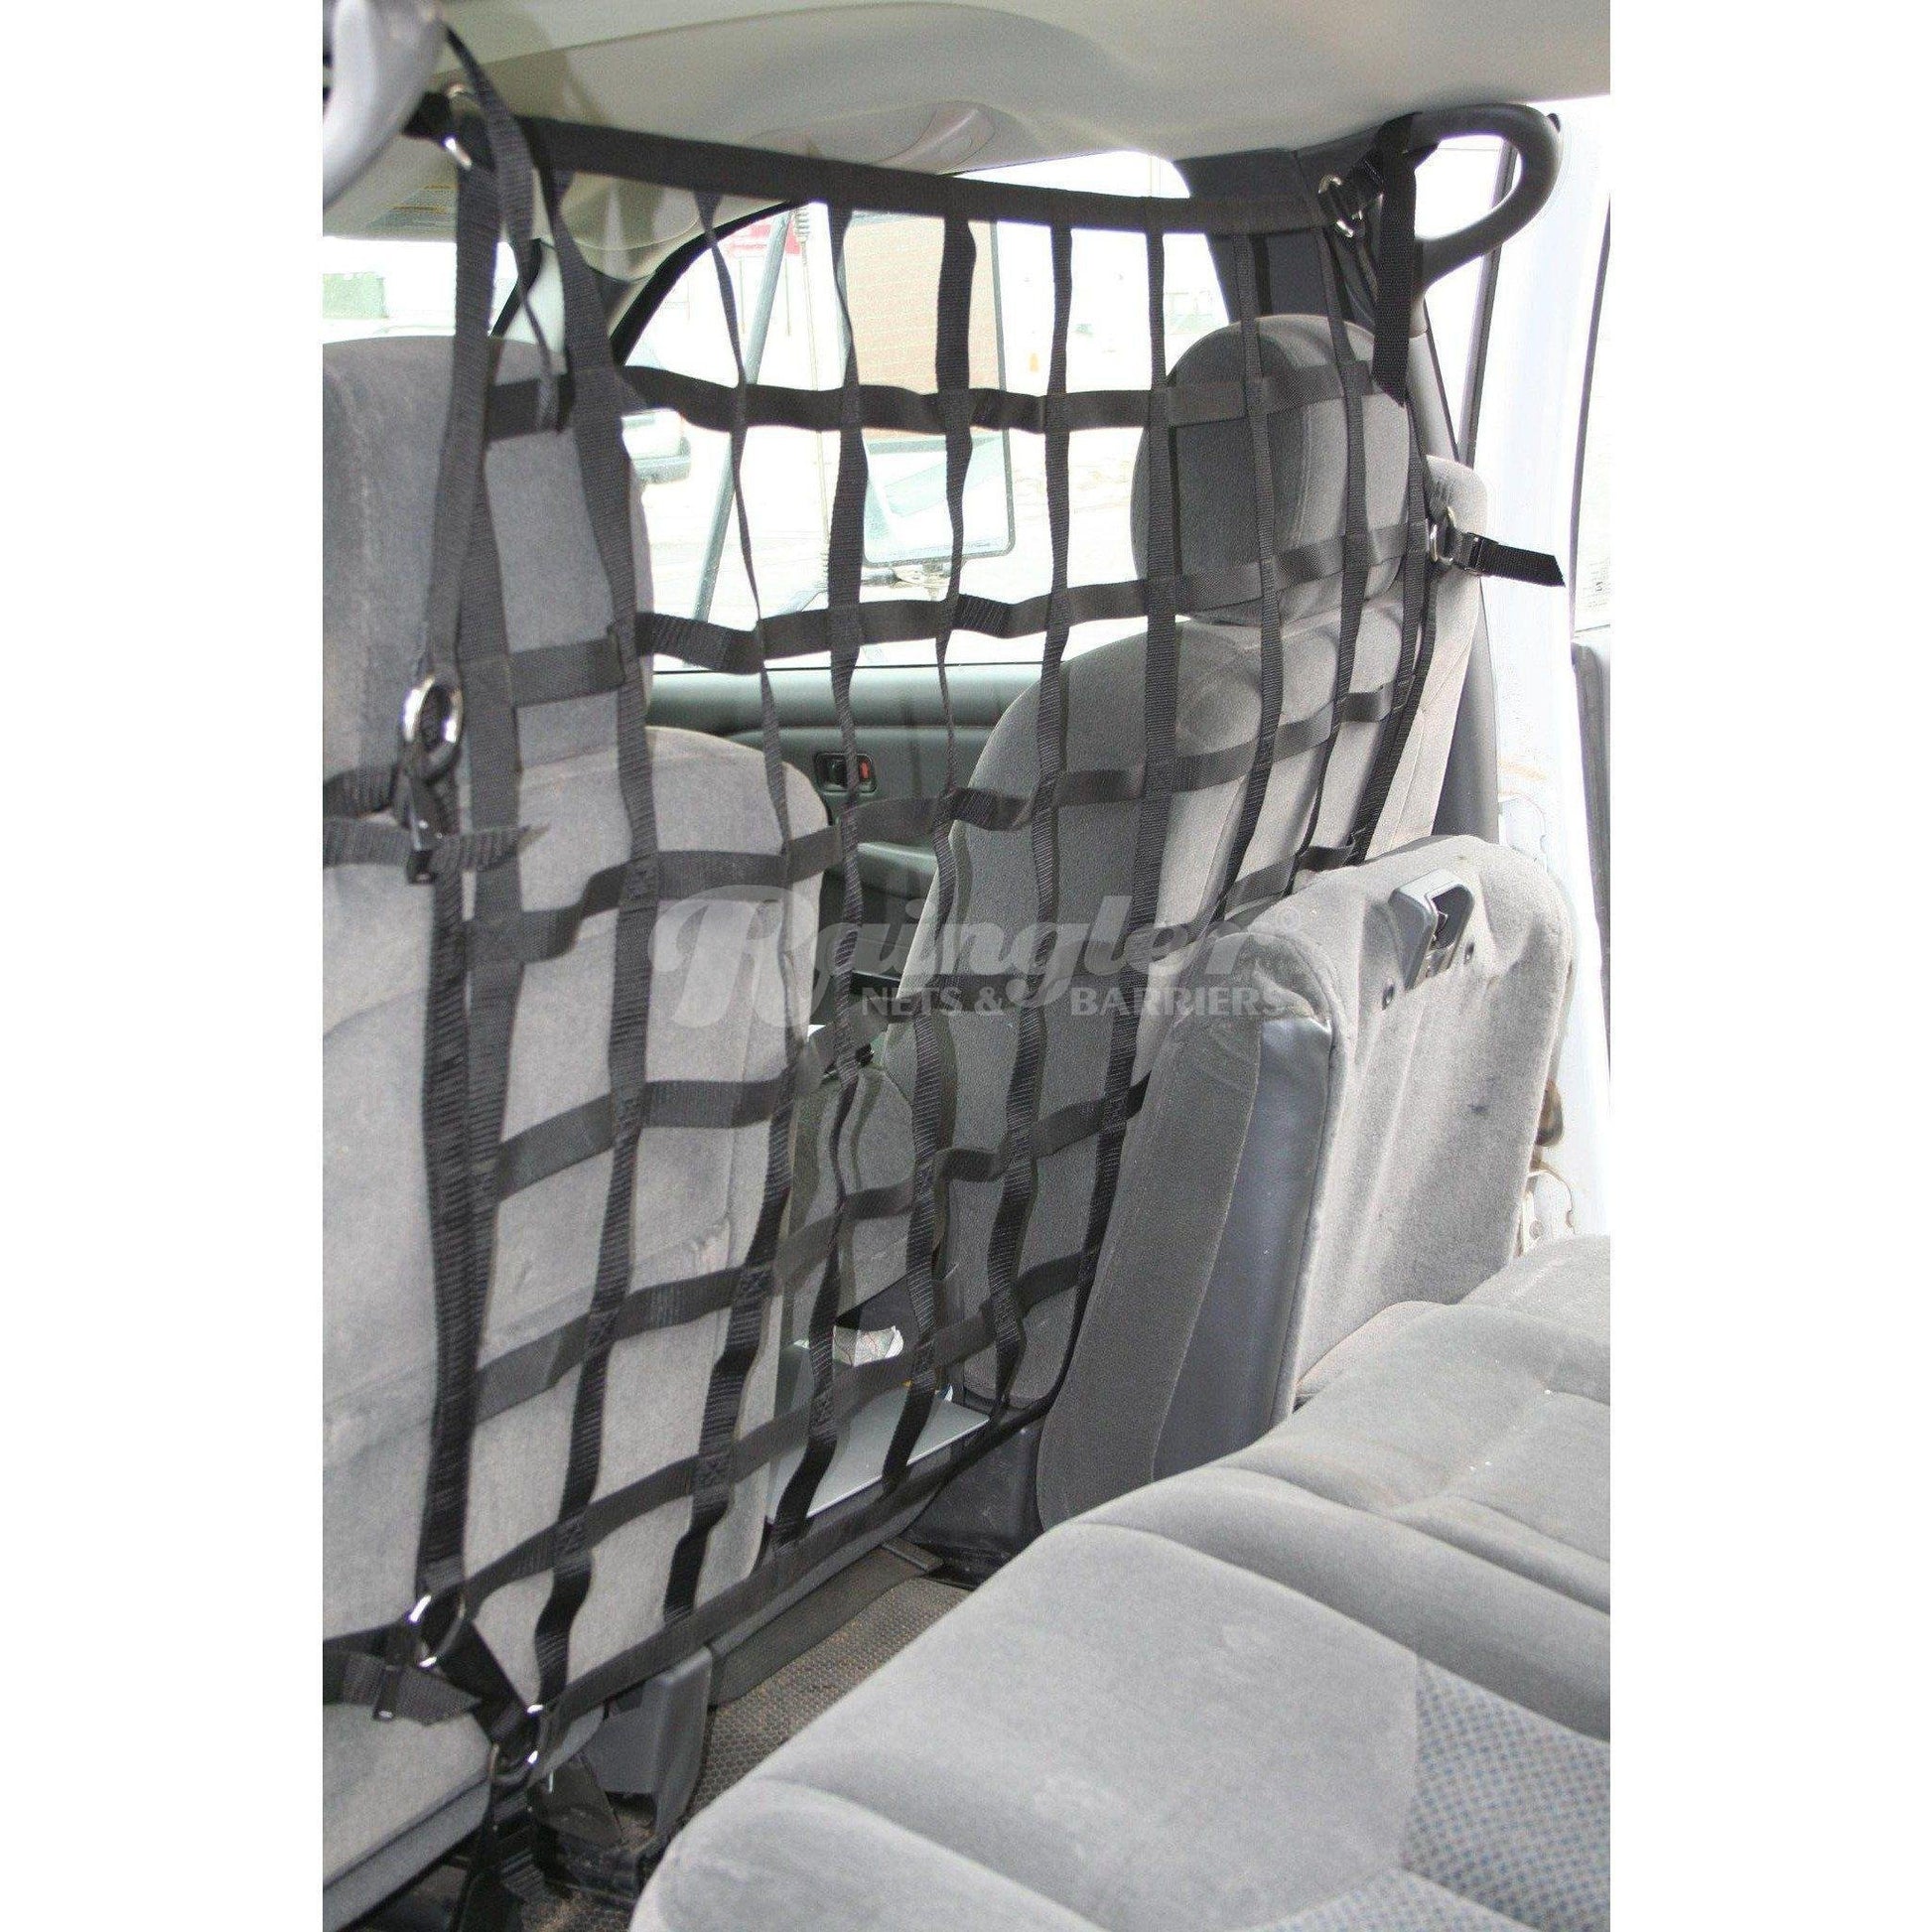 1998 - 2006 Chevrolet Silverado Truck Behind Front Seats Barrier Divider Net-Raingler